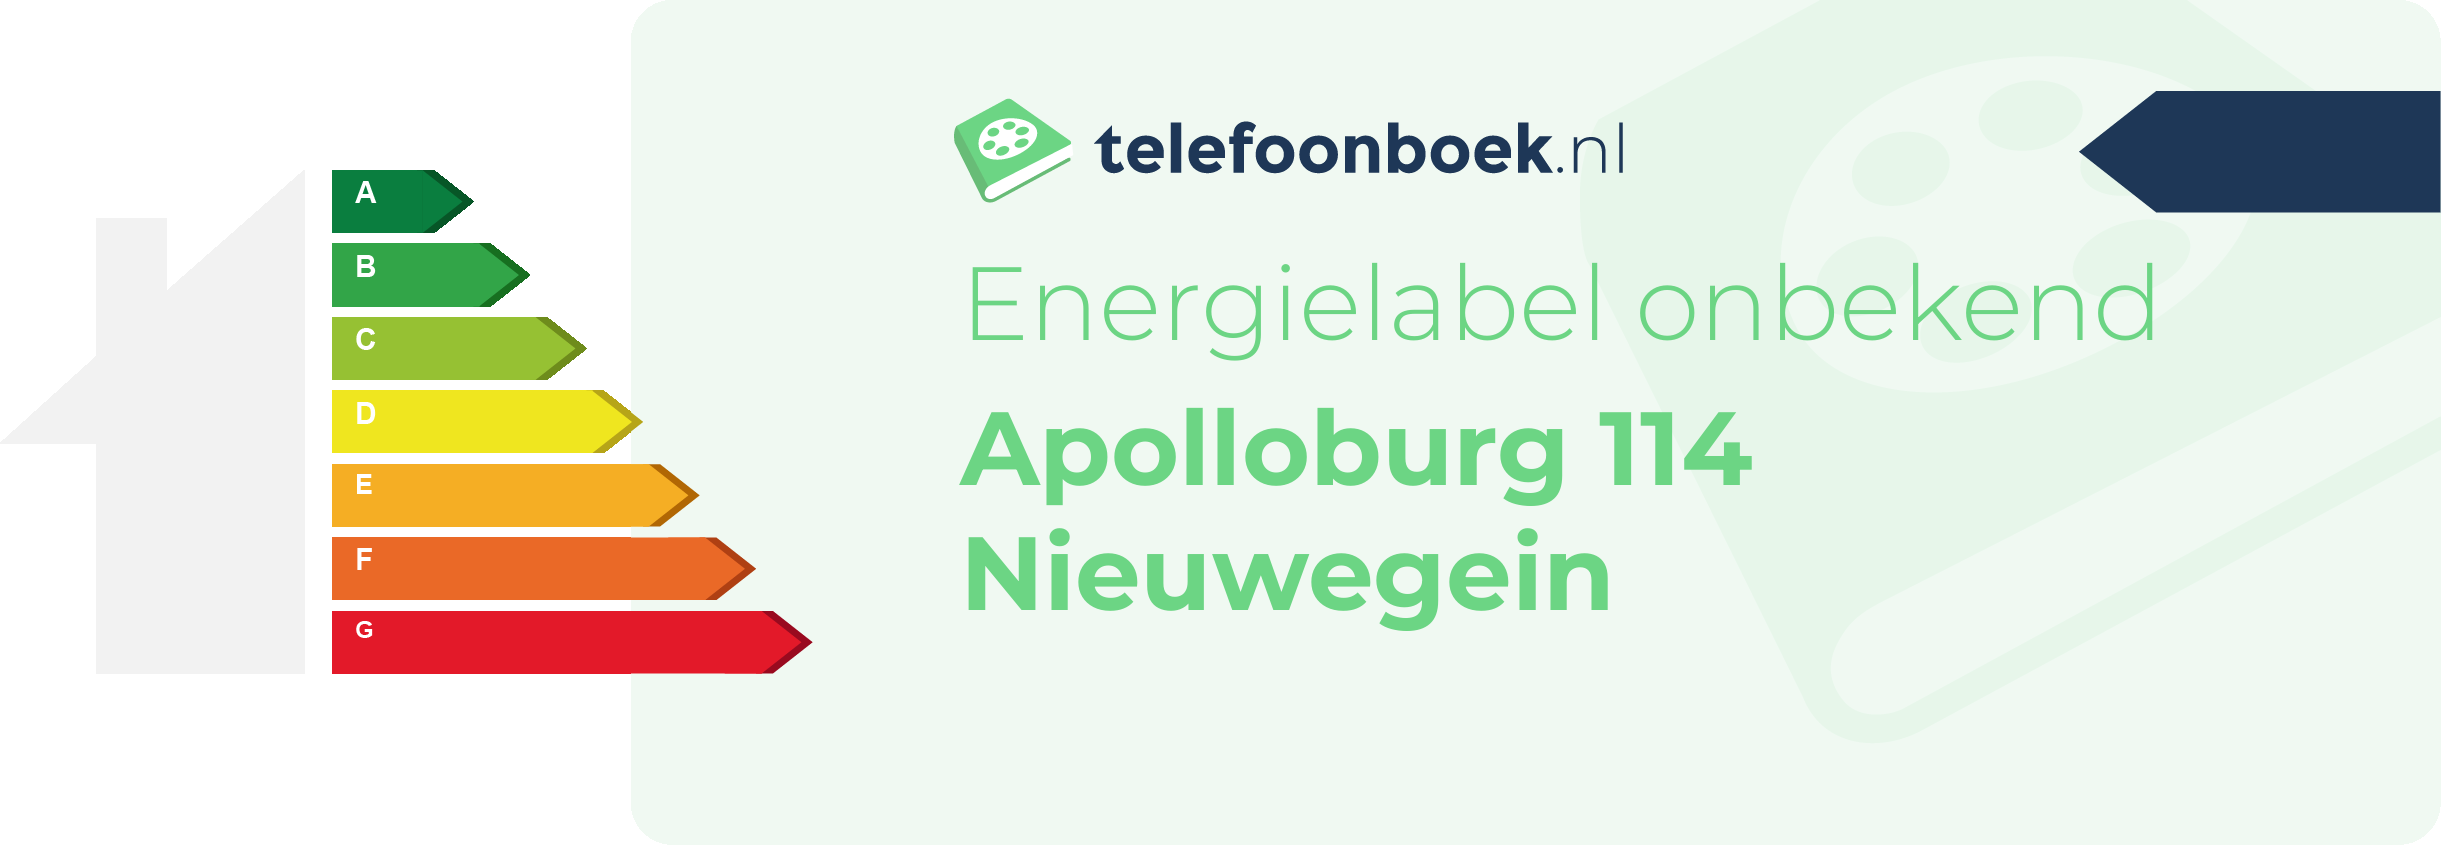 Energielabel Apolloburg 114 Nieuwegein